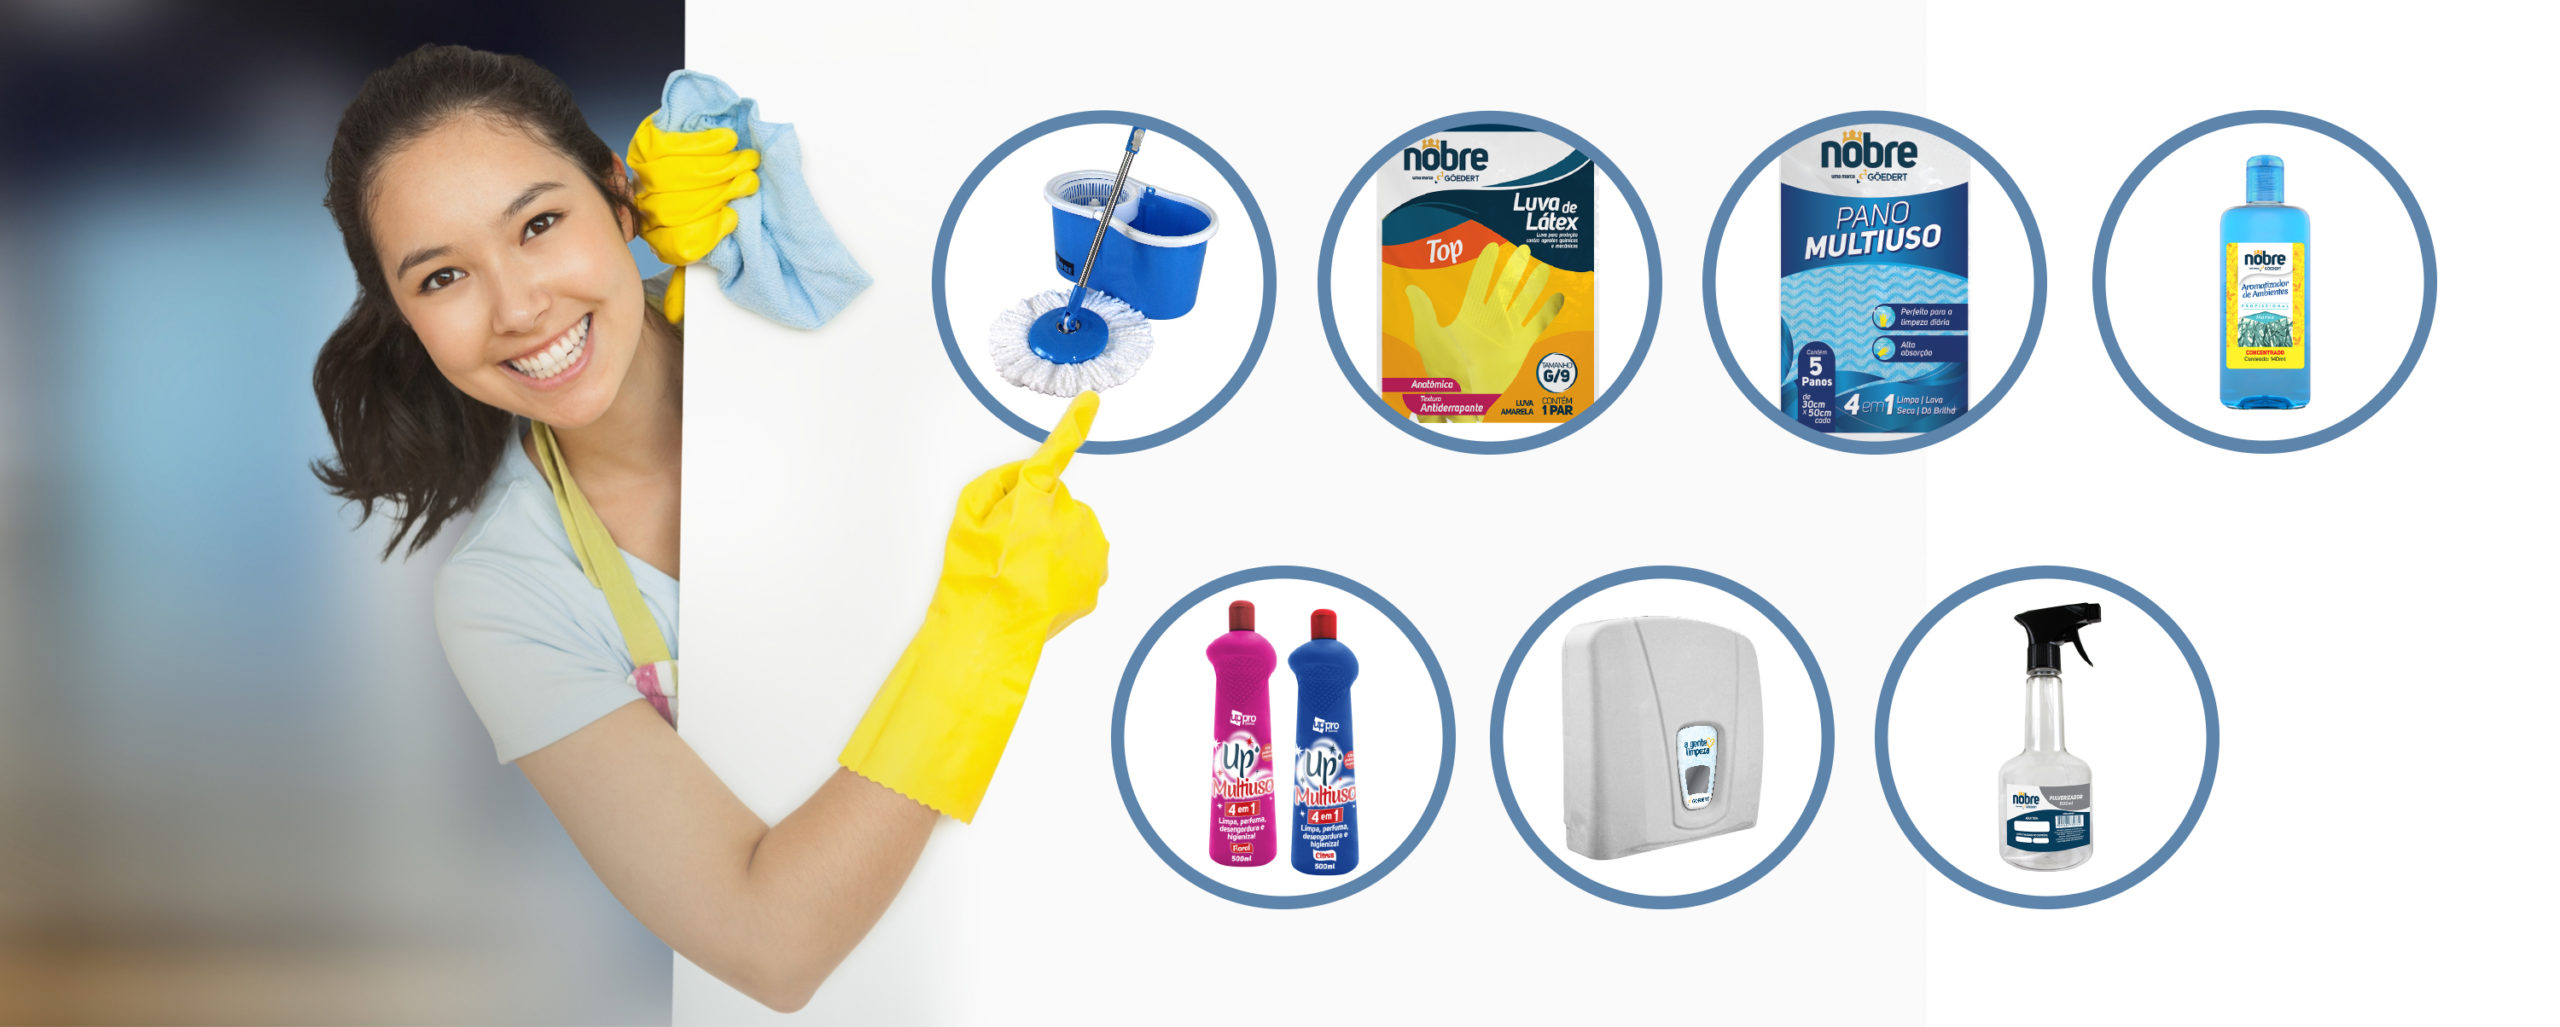 Kit Nobre: os principais produtos de limpeza para sua casa